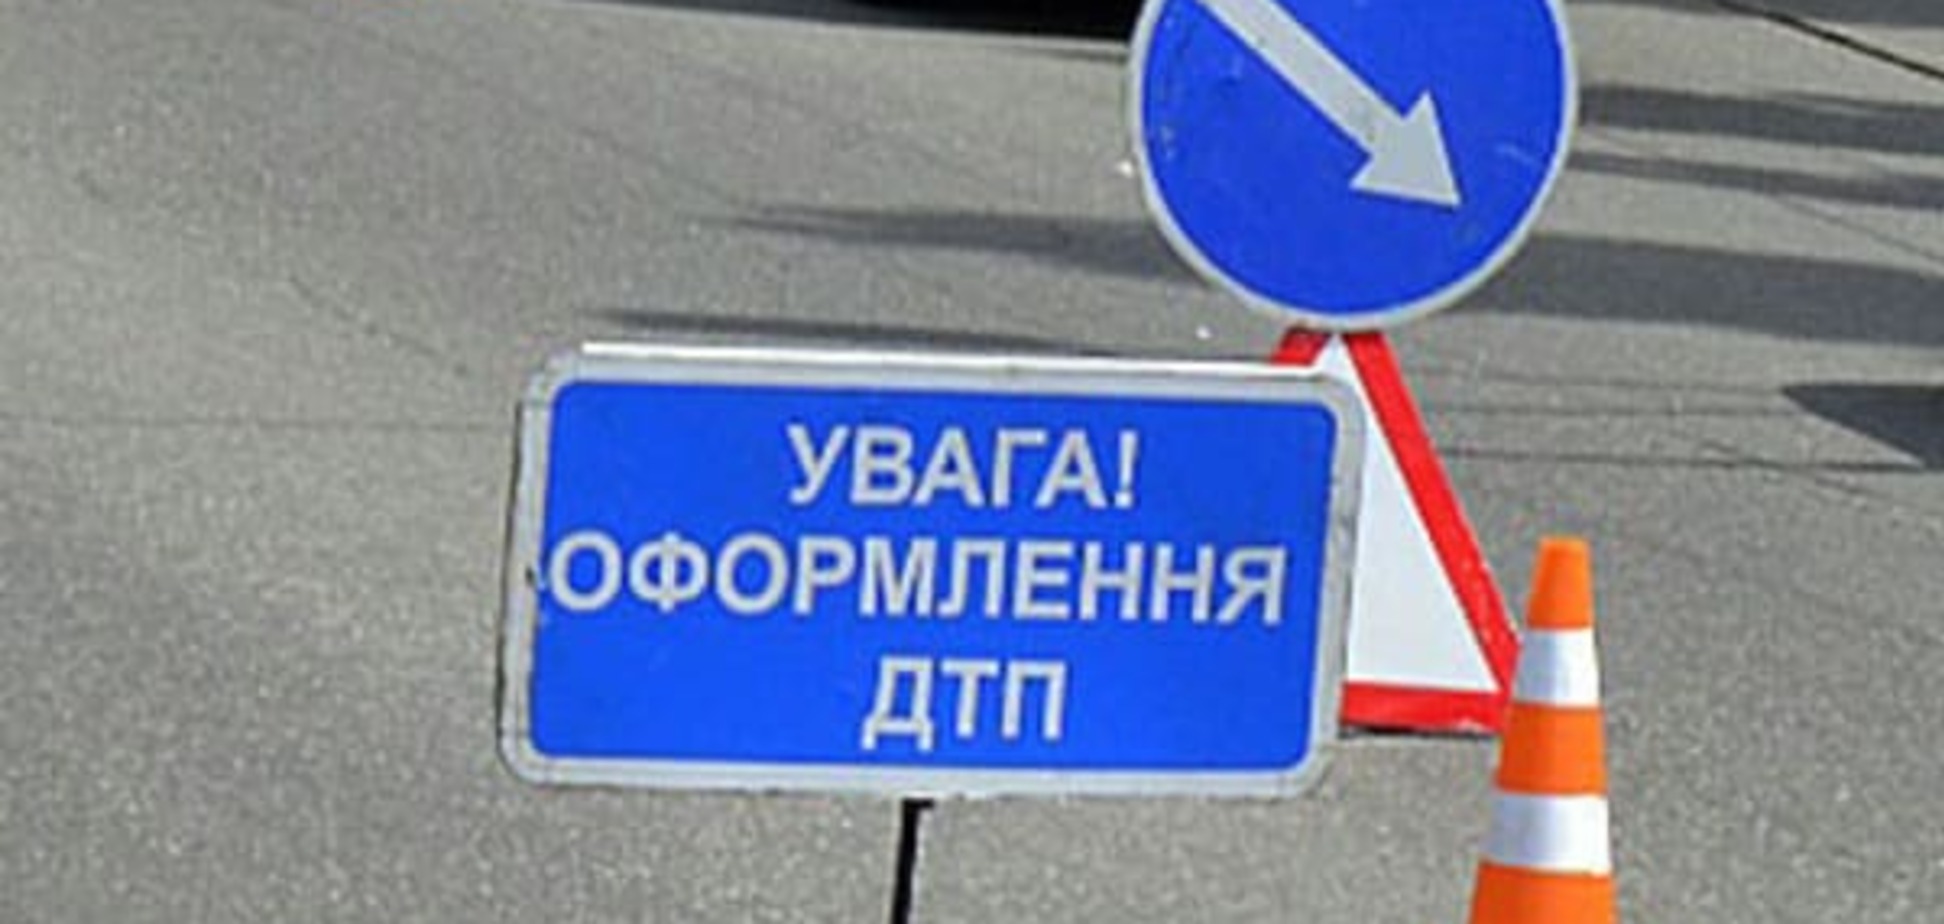 'Сліпі' водії або зухвалі пішоходи? У Києві 4 людини потрапили під колеса авто